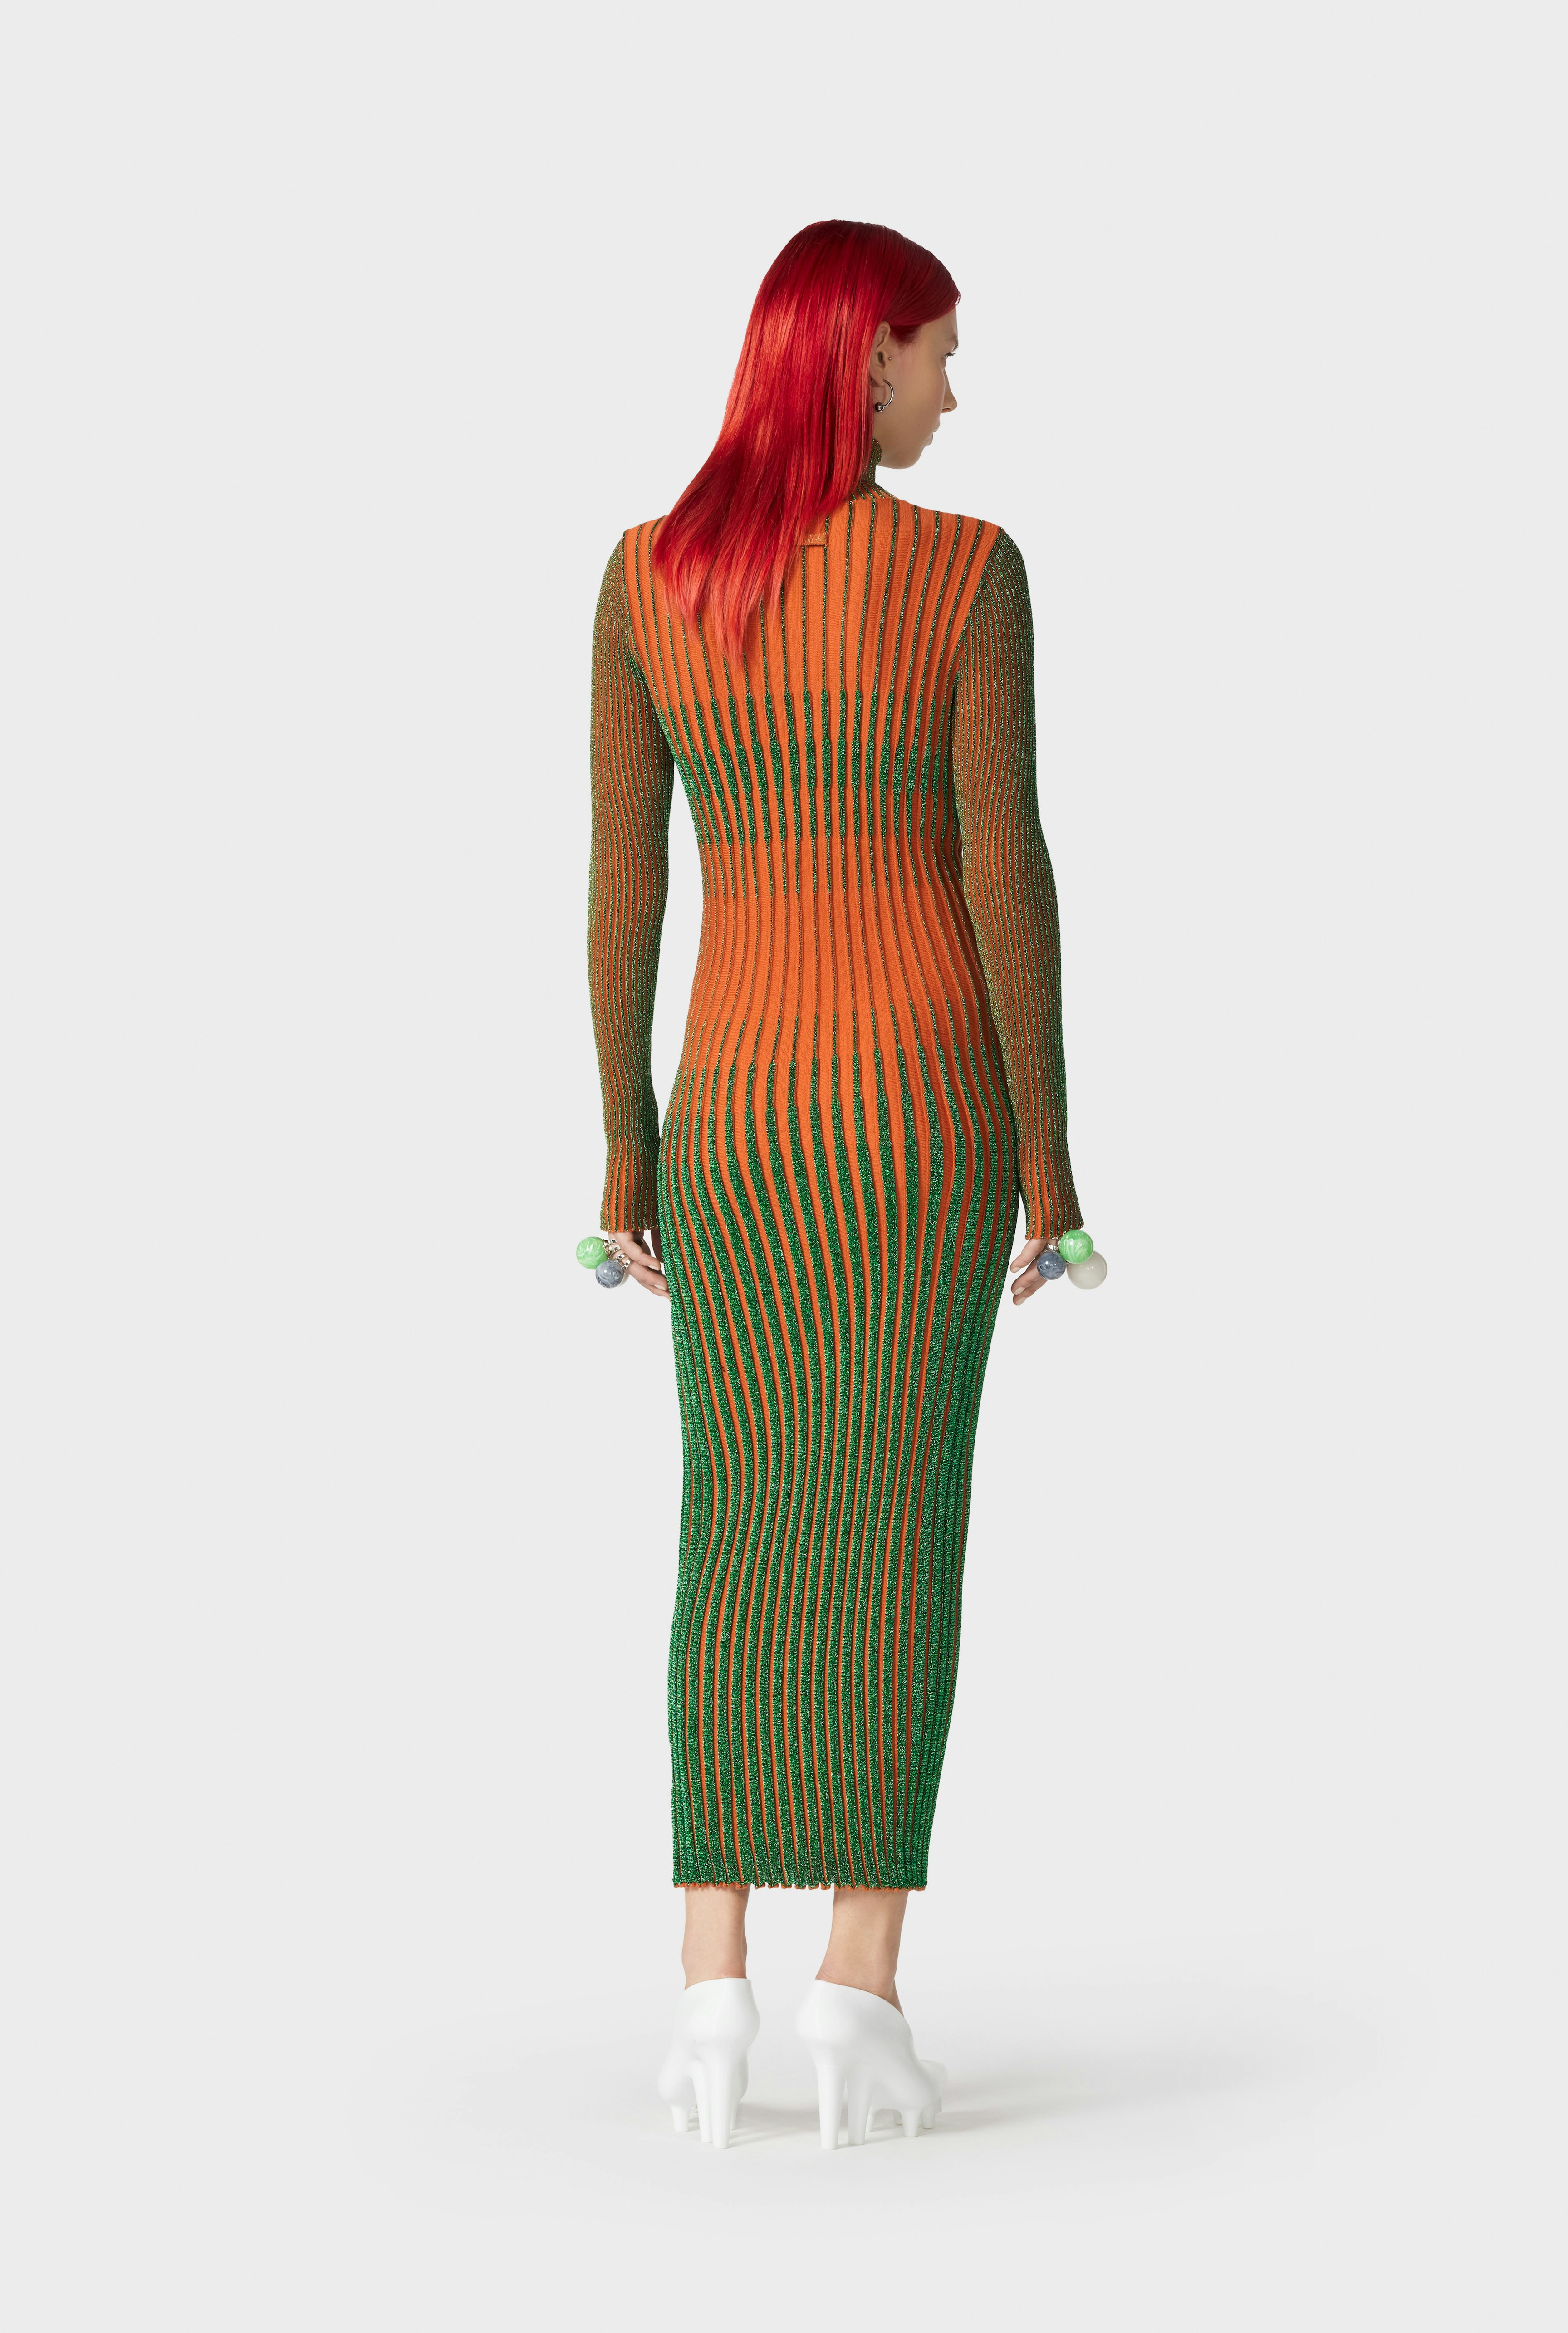 The Orange Cyber Knit Dress